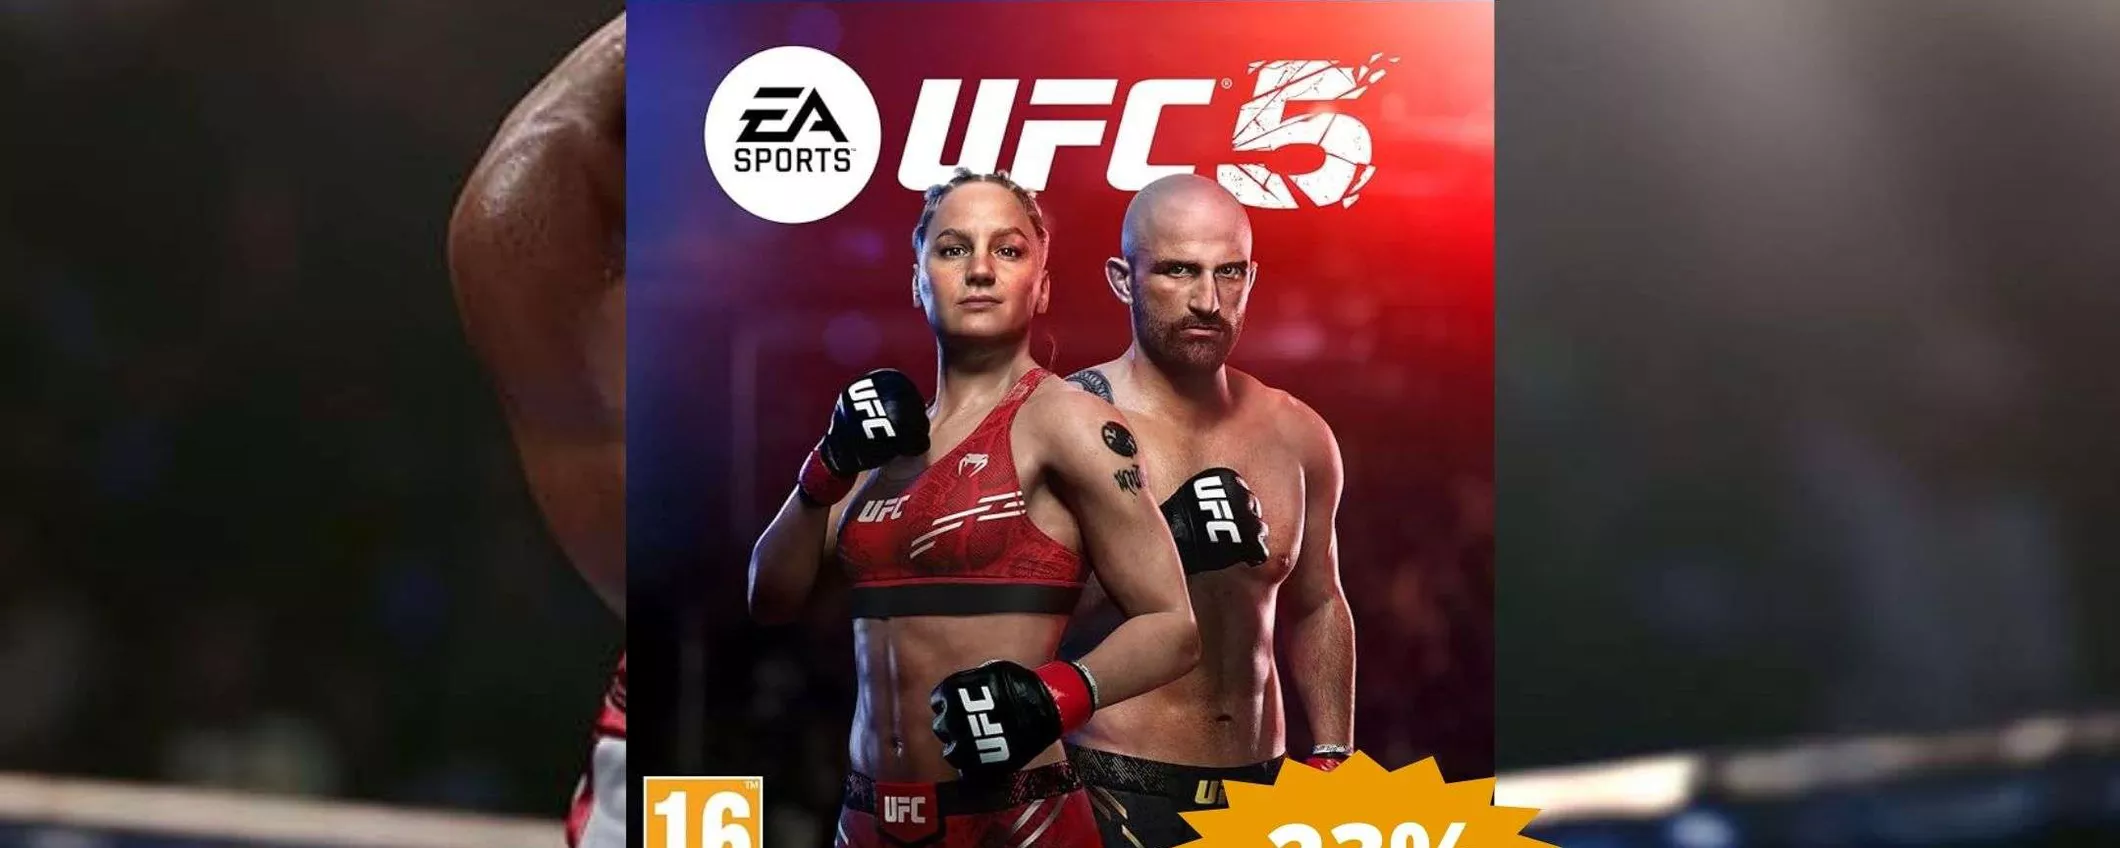 EA SPORTS UFC 5 per PS5: SUPER sconto del 23% su Amazon